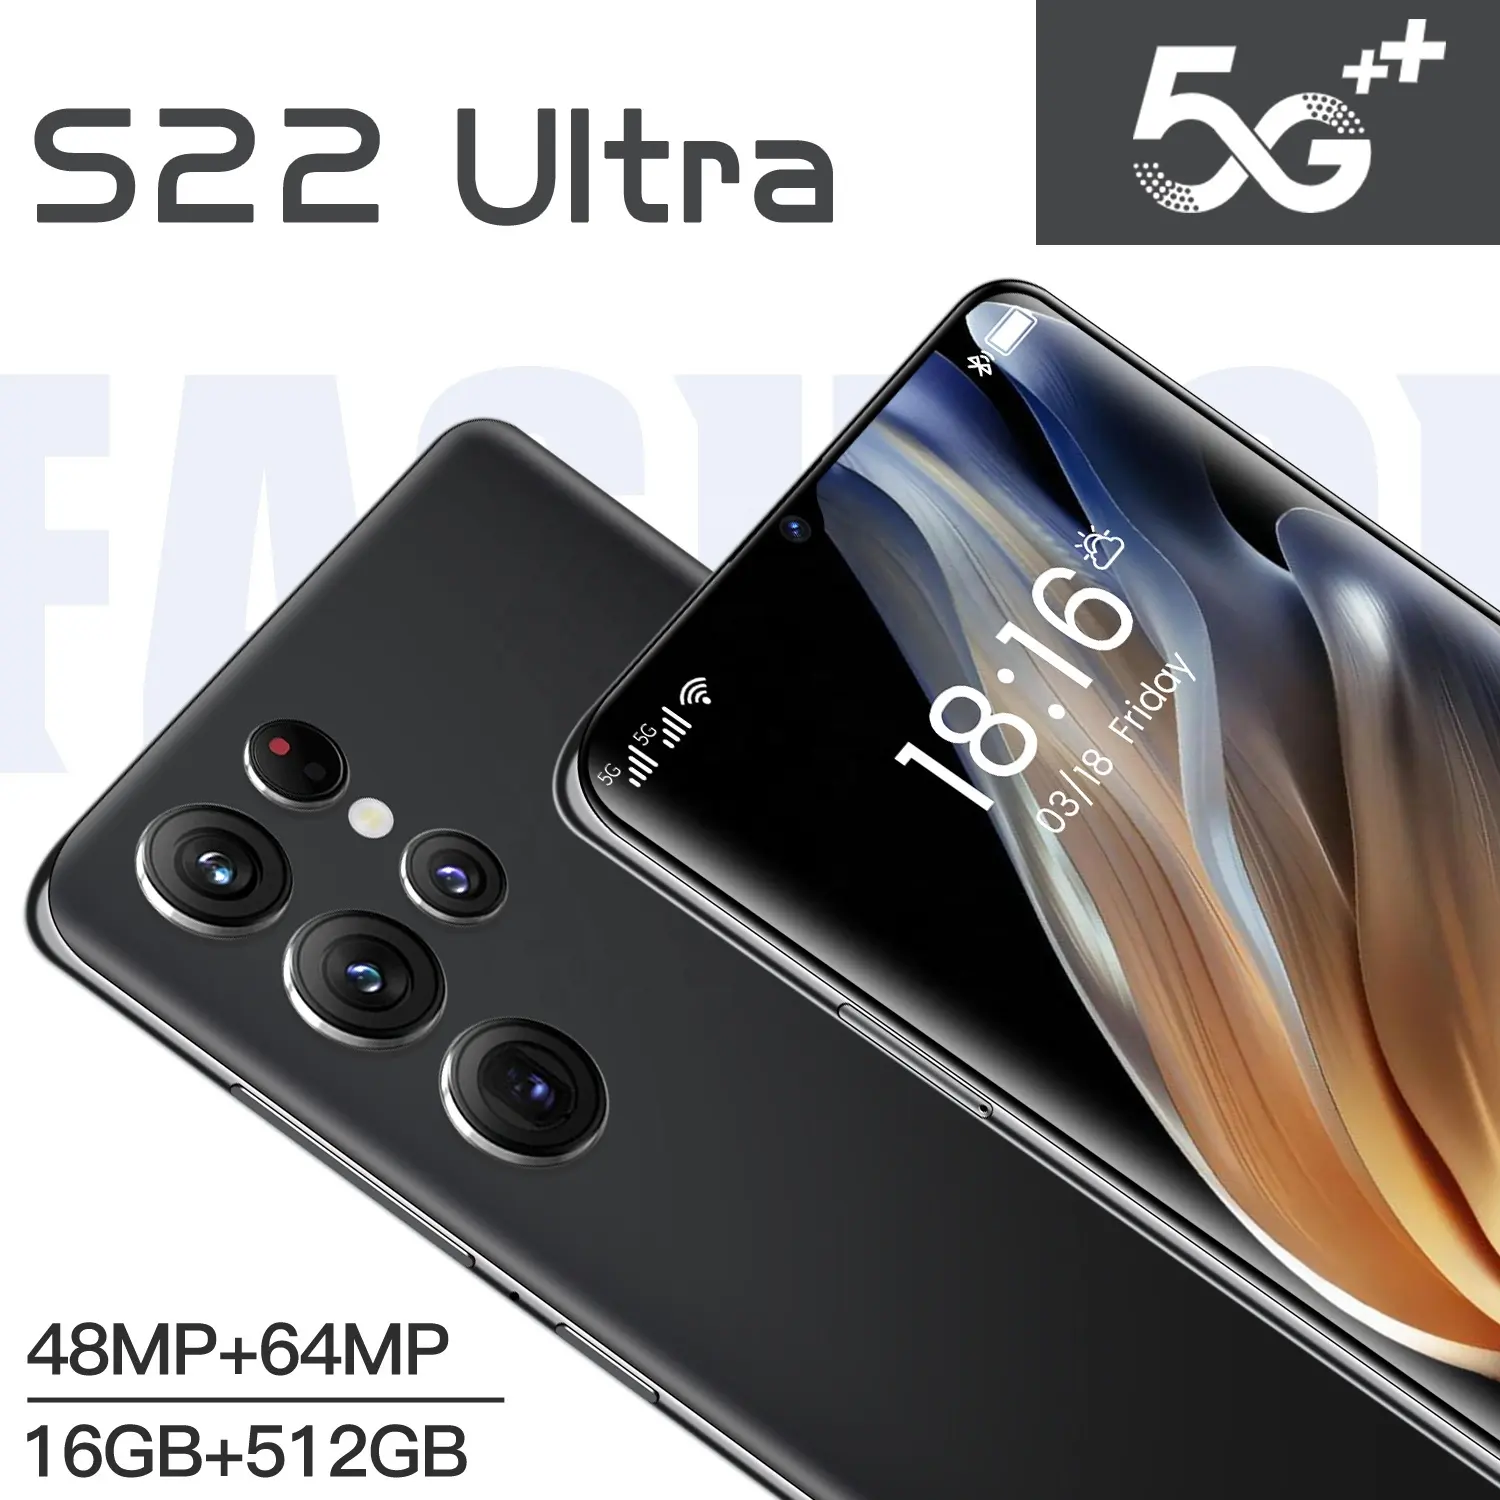 Smartphone s22 + ultra original, celular com tela de 7.3 polegadas, 16gb + 1tb, câmeras de 48mp + 72mp, gaming, 5g, dual sim